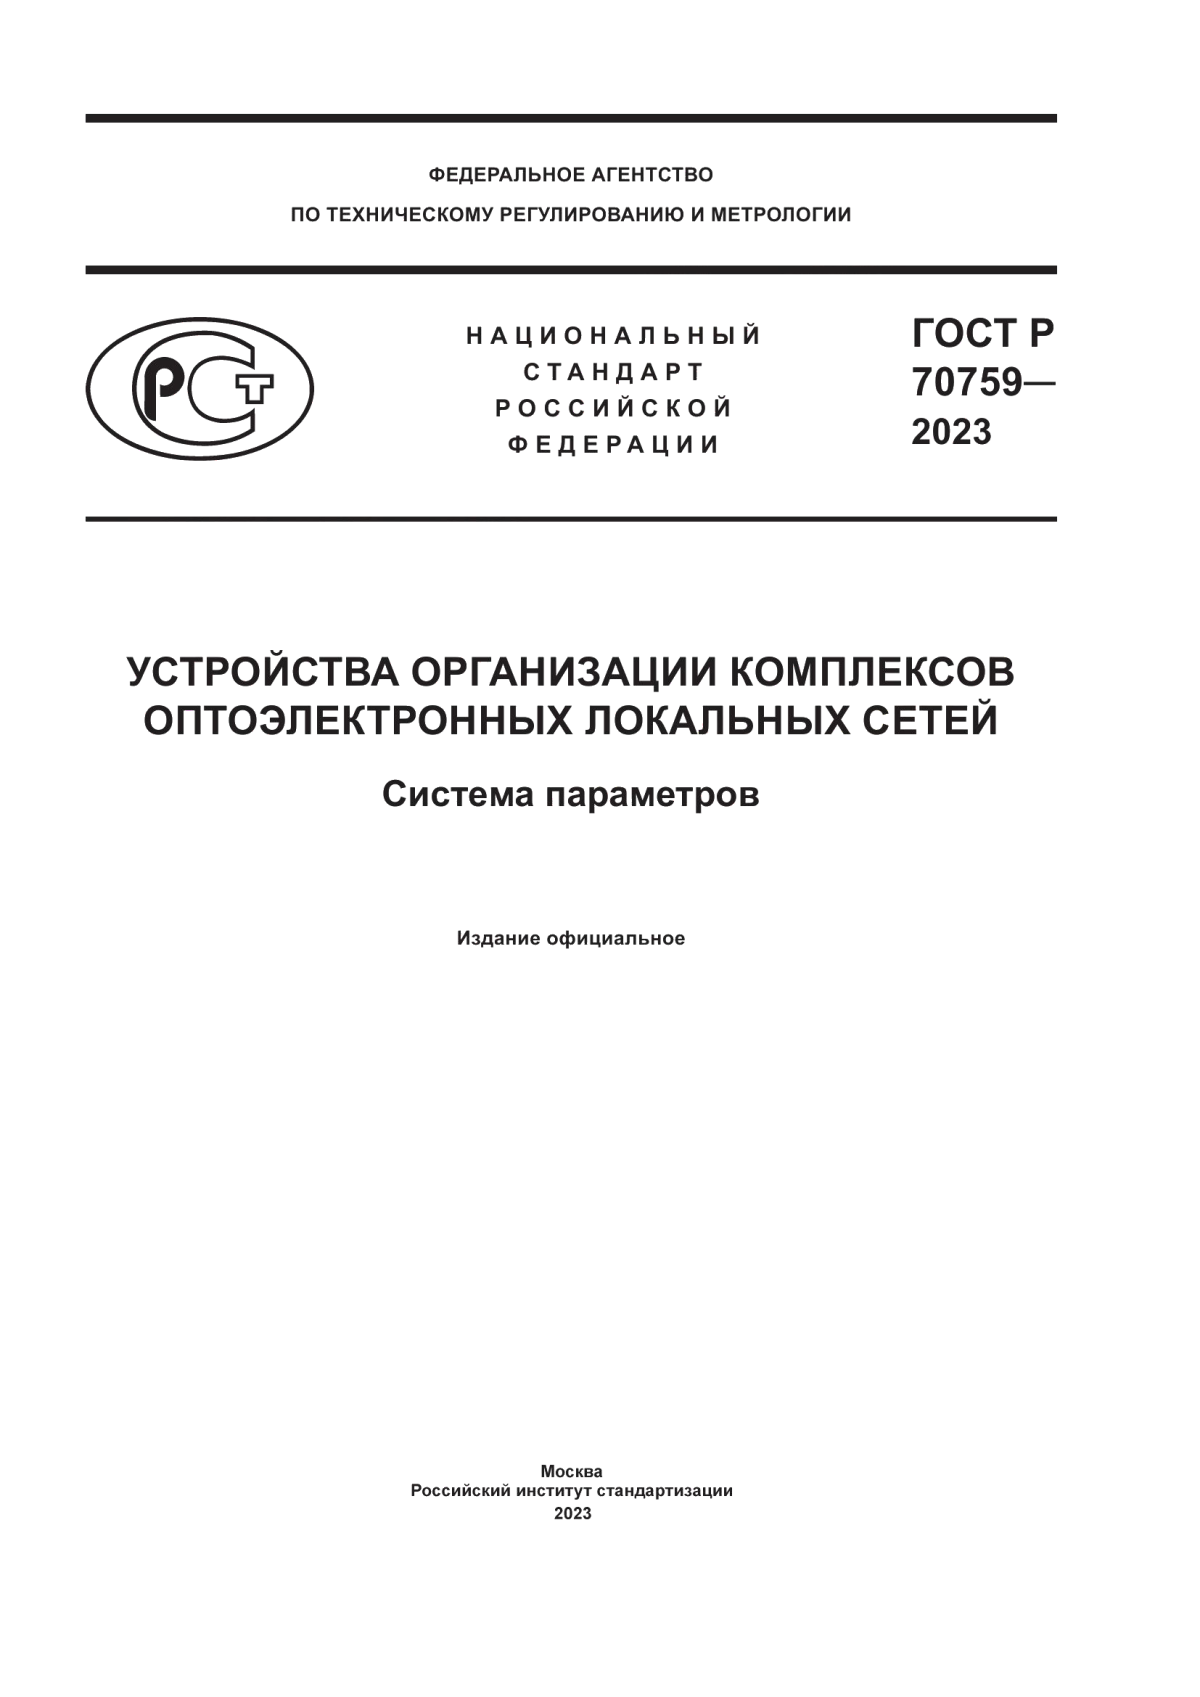 ГОСТ Р 70759-2023 Устройства организации комплексов оптоэлектронных локальных сетей. Система параметров